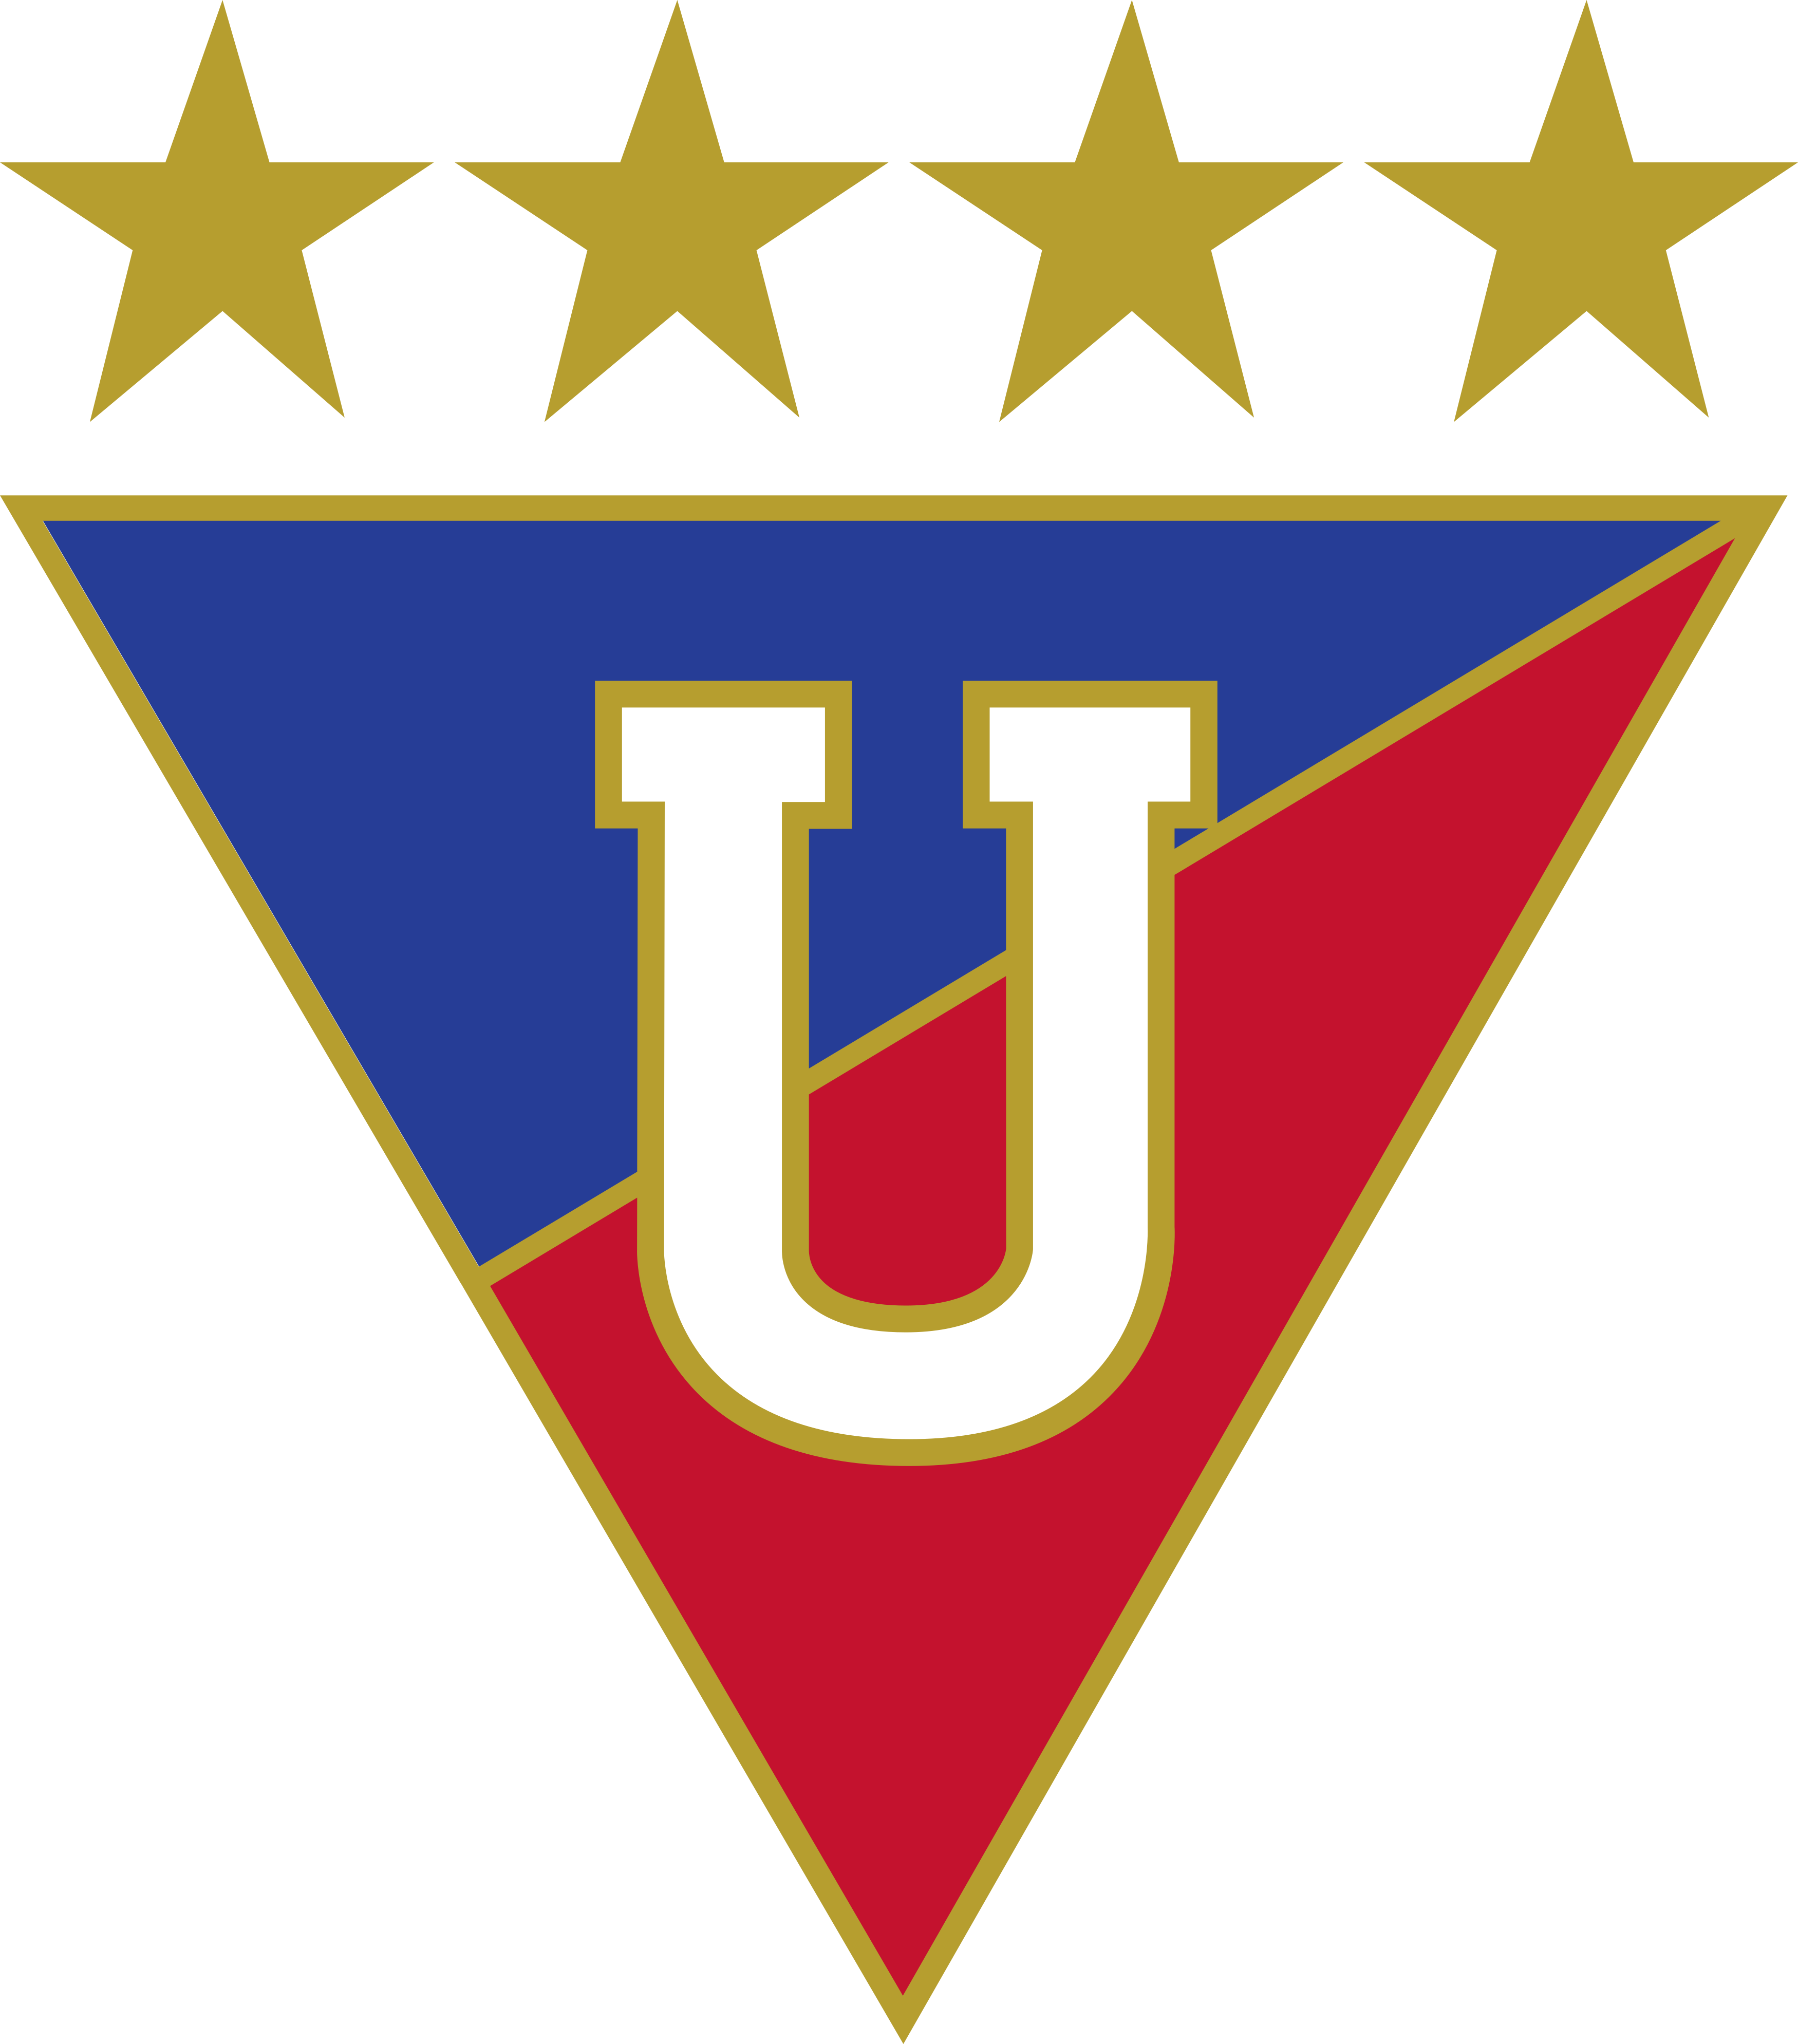 ldu logo 1 - LDU Logo